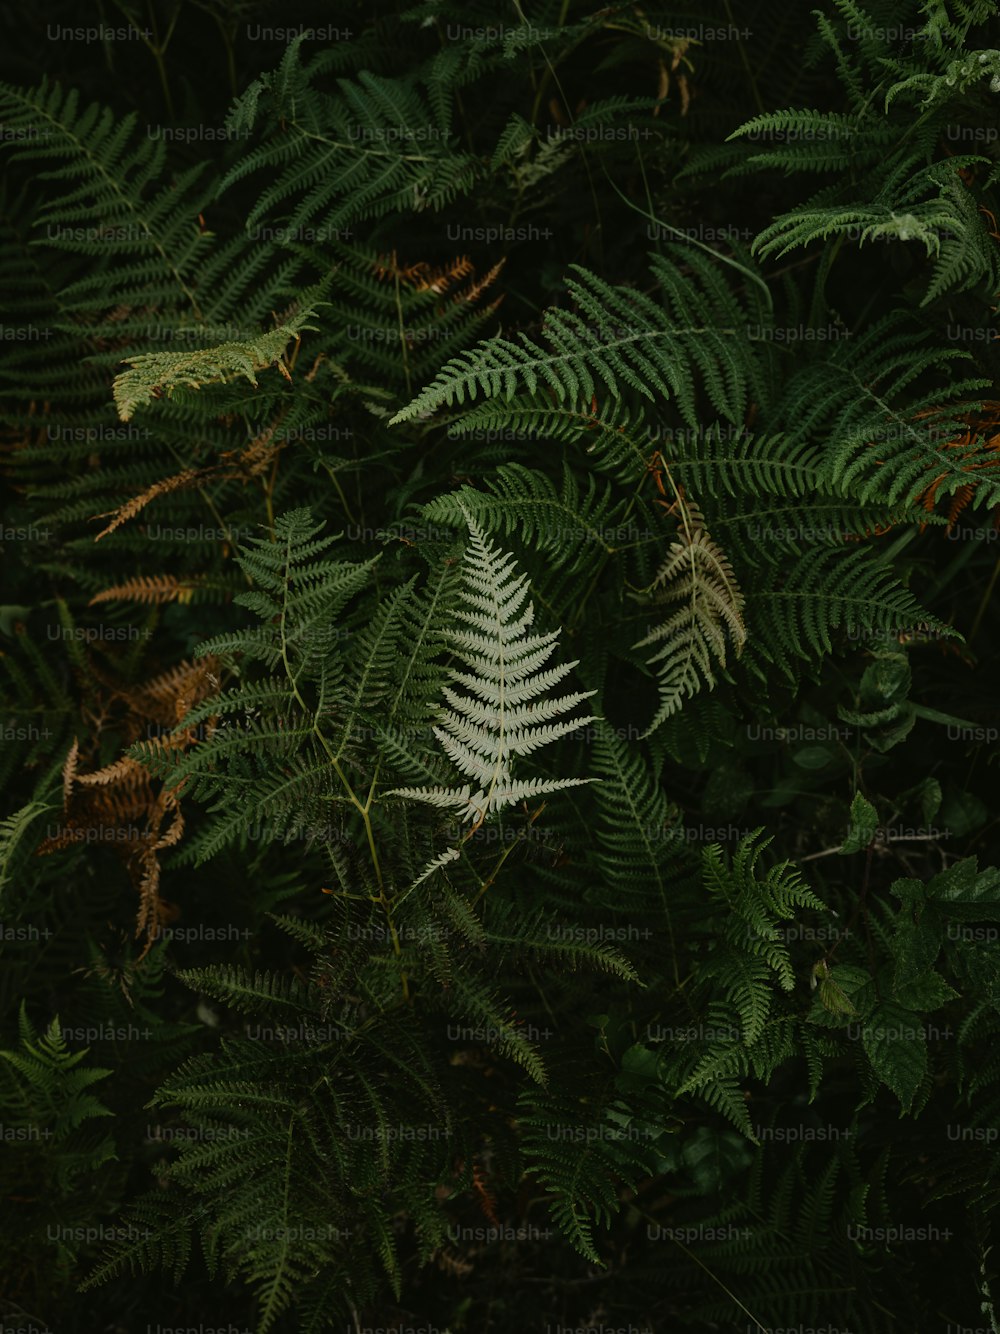 Un primer plano de una planta frondosa con muchas hojas verdes